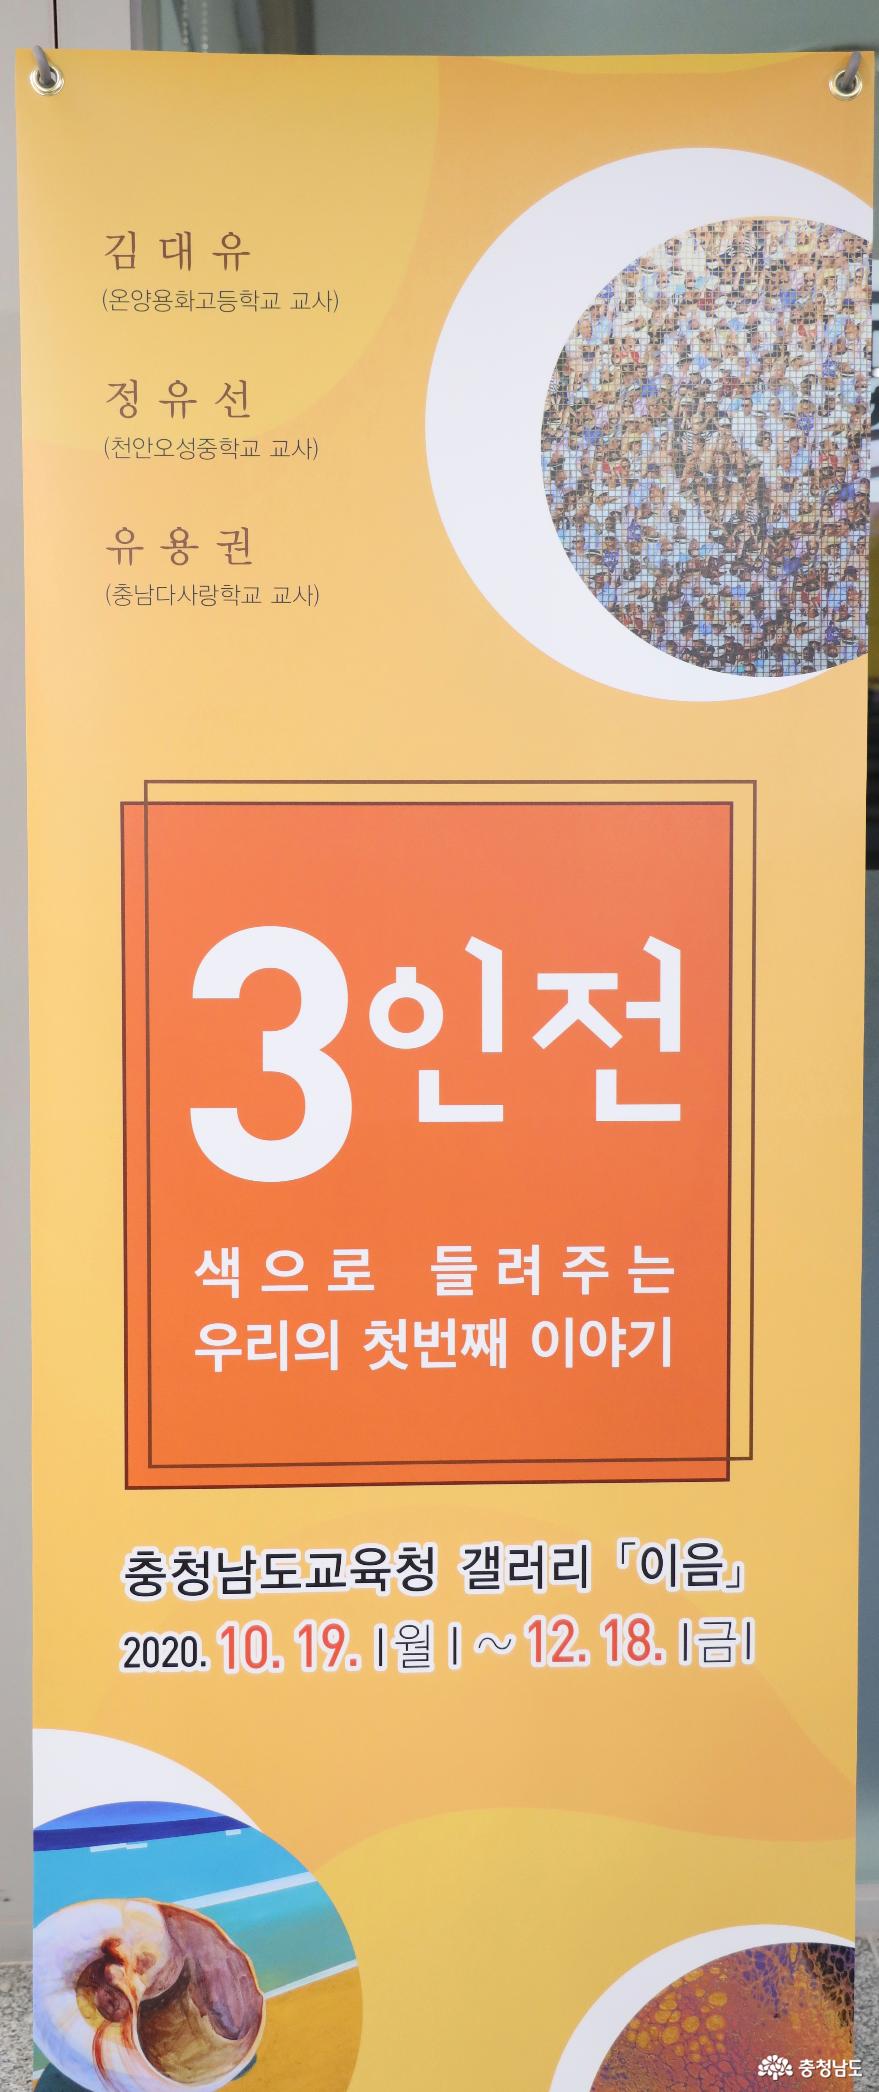 충남교육청 갤러리 이음 다섯 번째 전시 ‘3인전’ 개최 사진